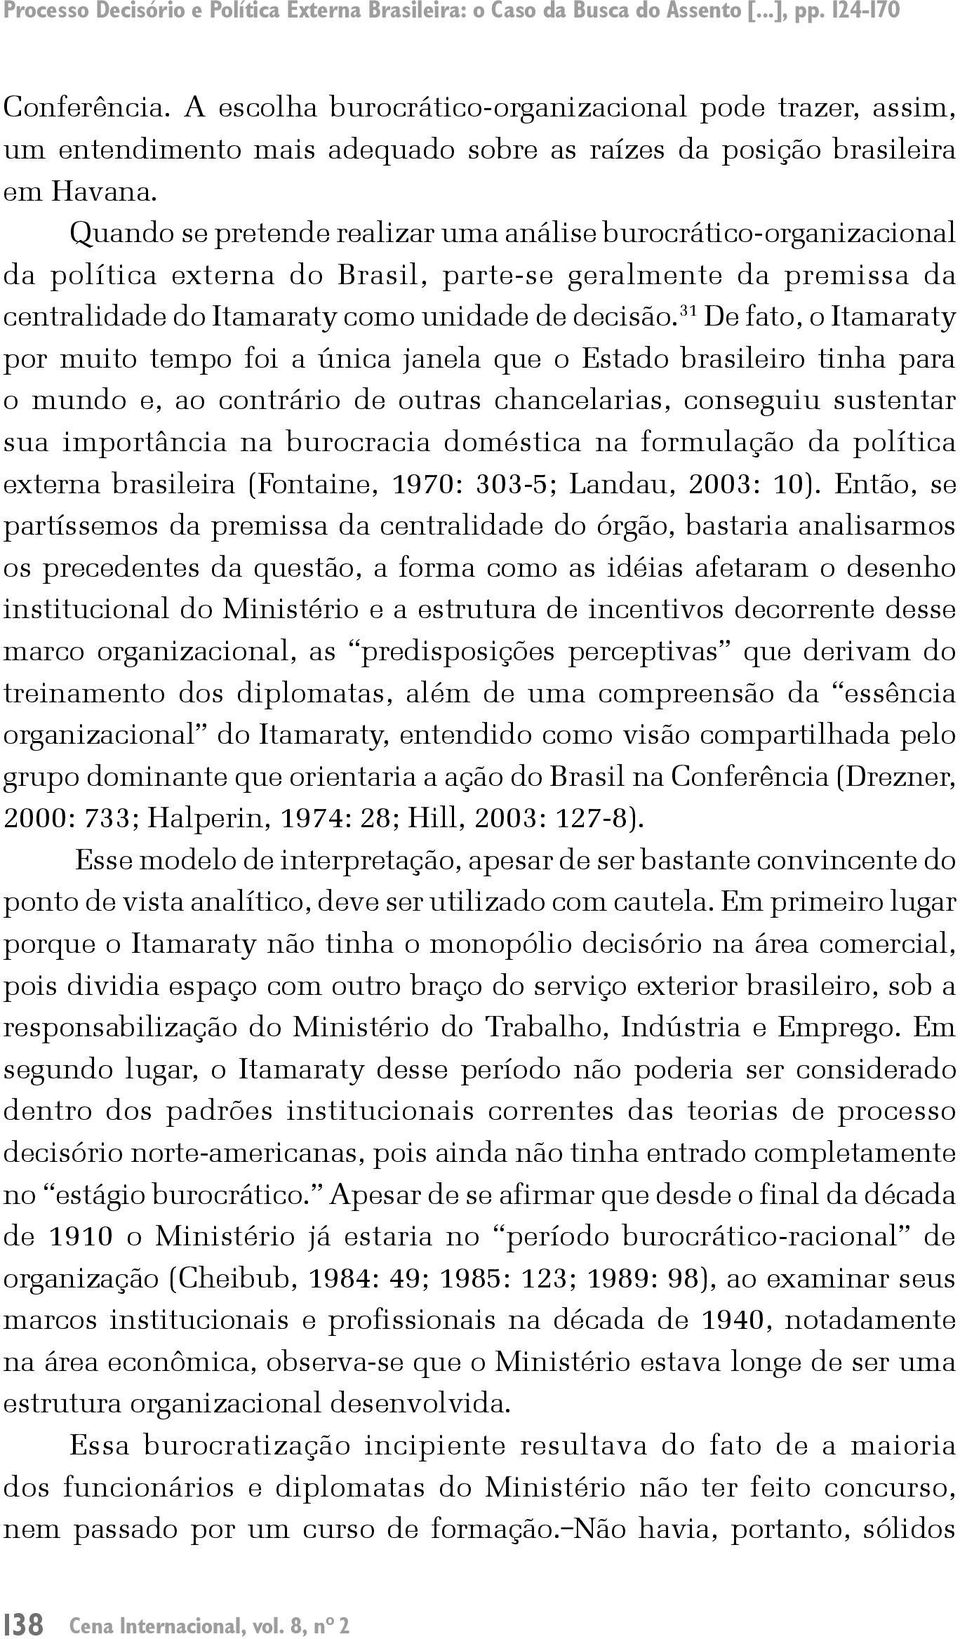 Quando se pretende realizar uma análise burocrático-organizacional da política externa do Brasil, parte-se geralmente da premissa da centralidade do Itamaraty como unidade de decisão.